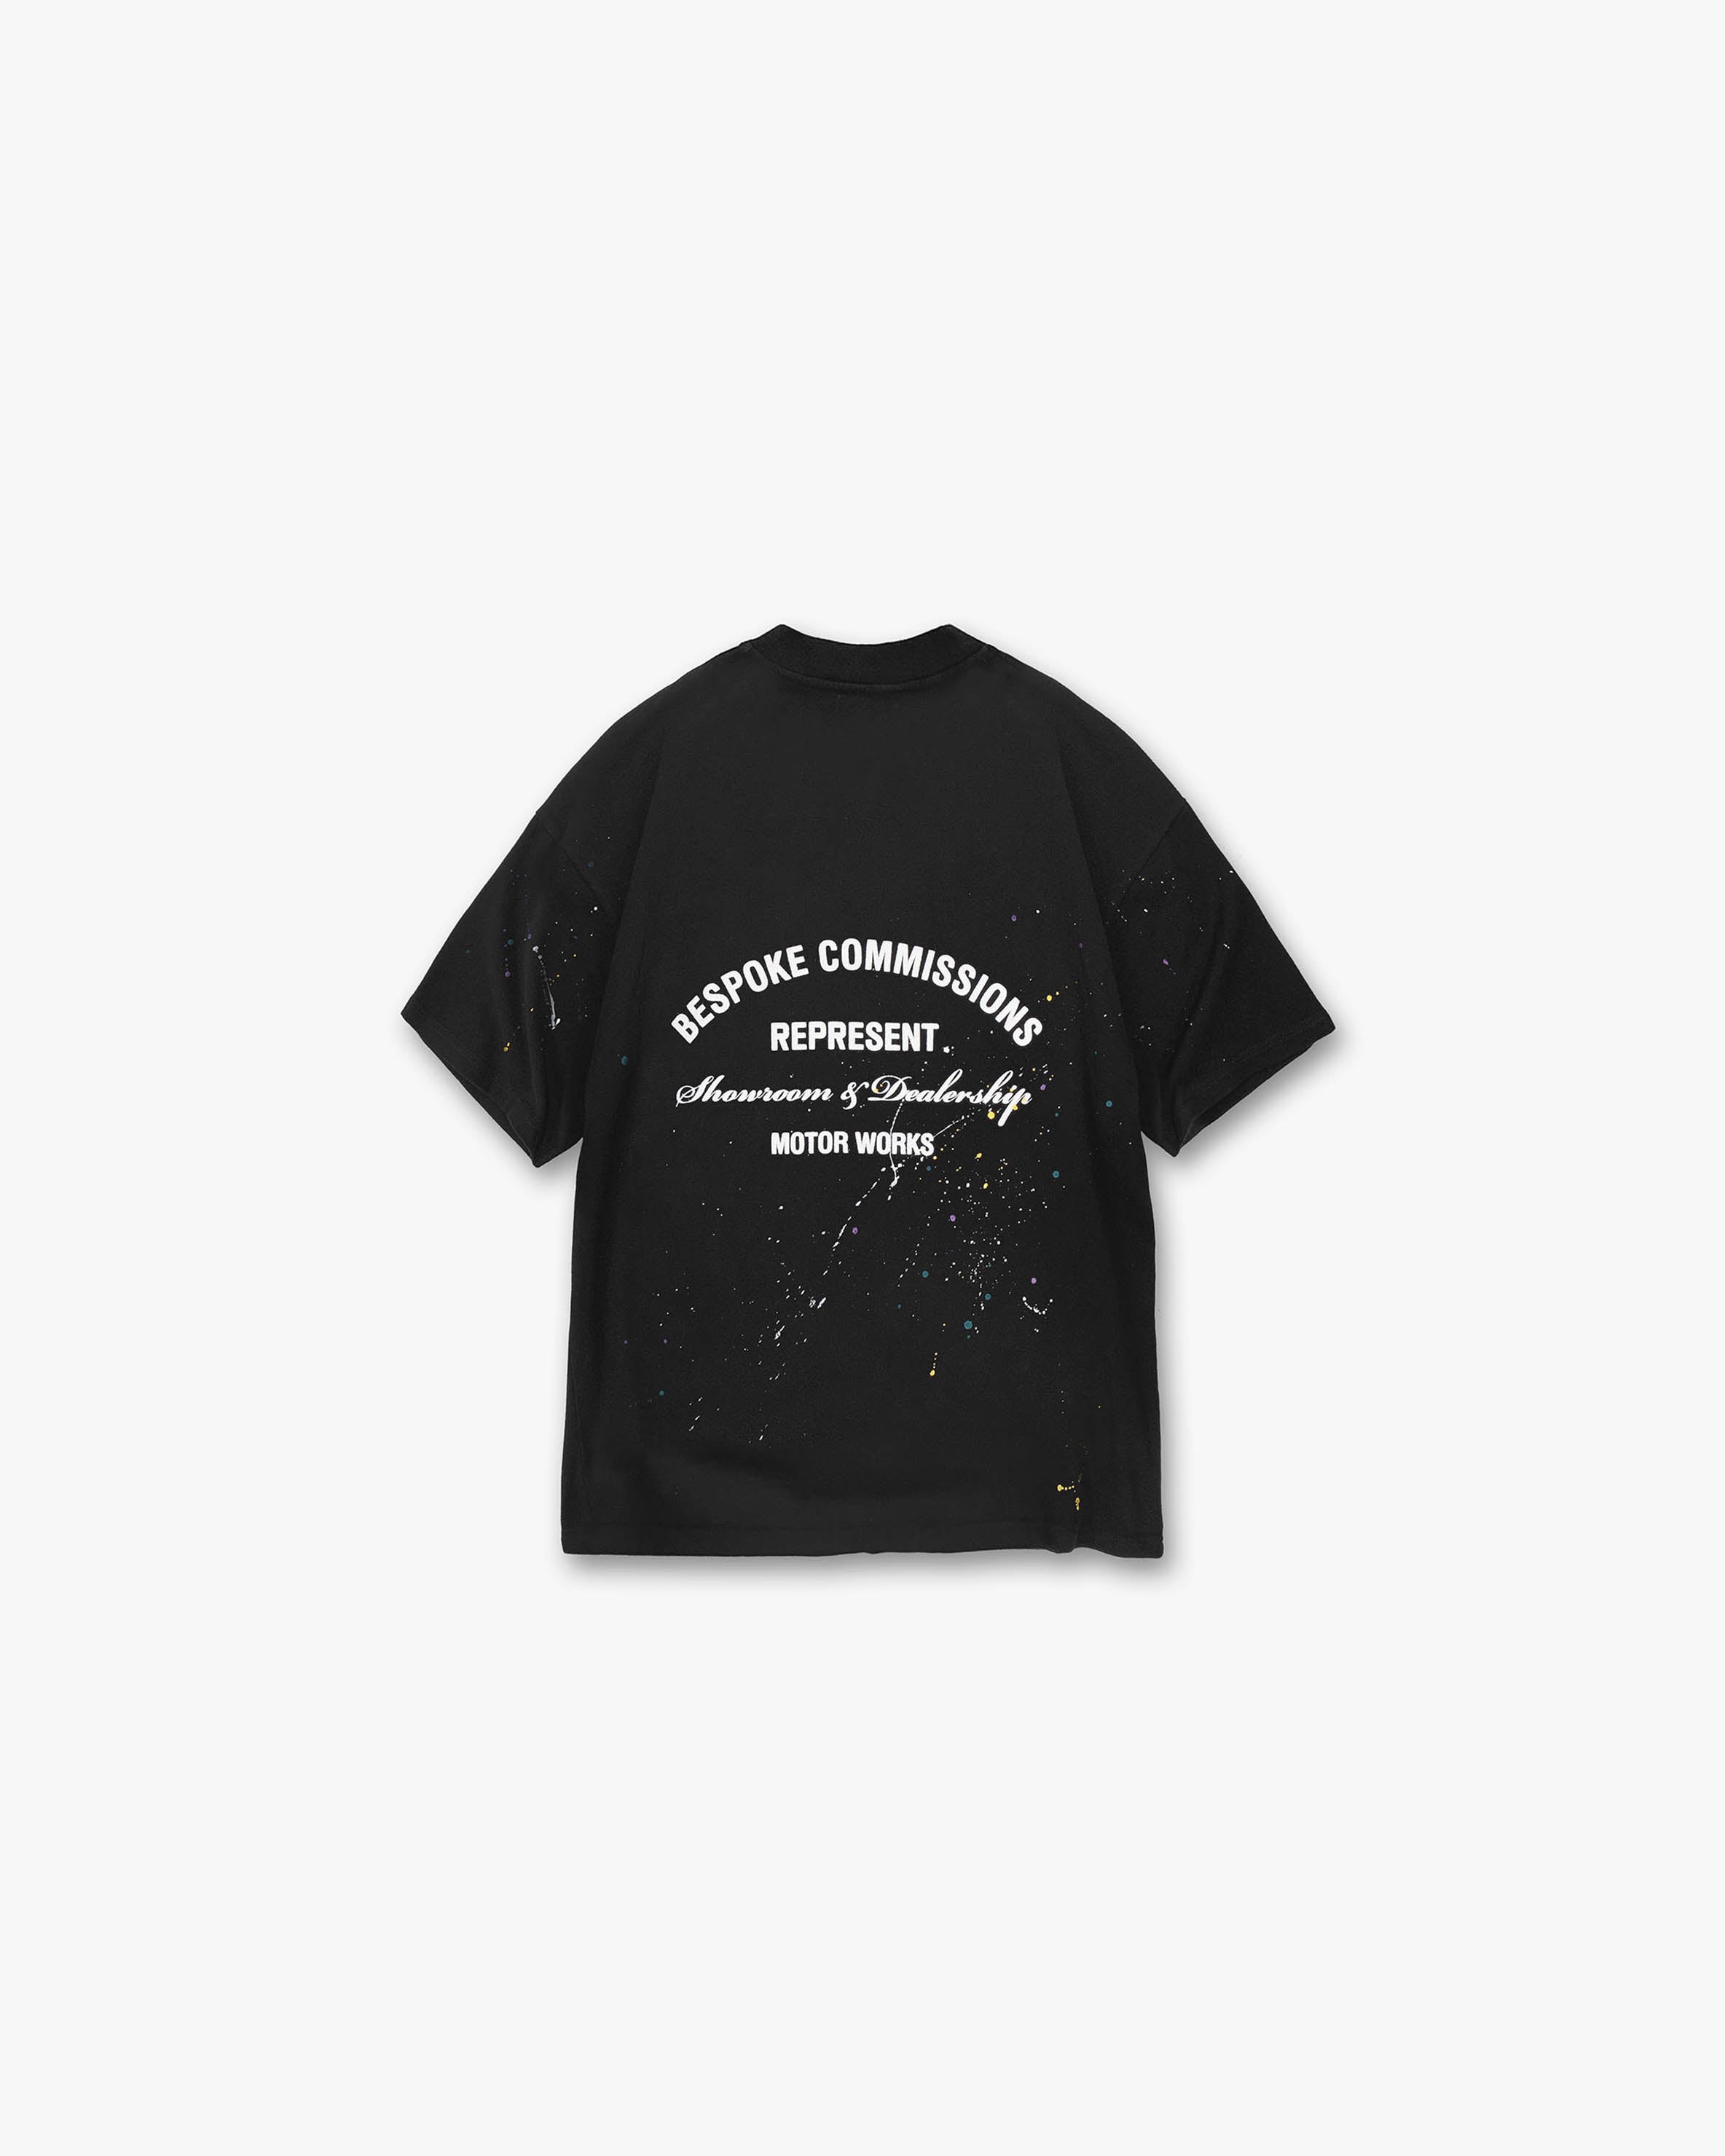 Bespoke Commissions T-Shirt - Off Black